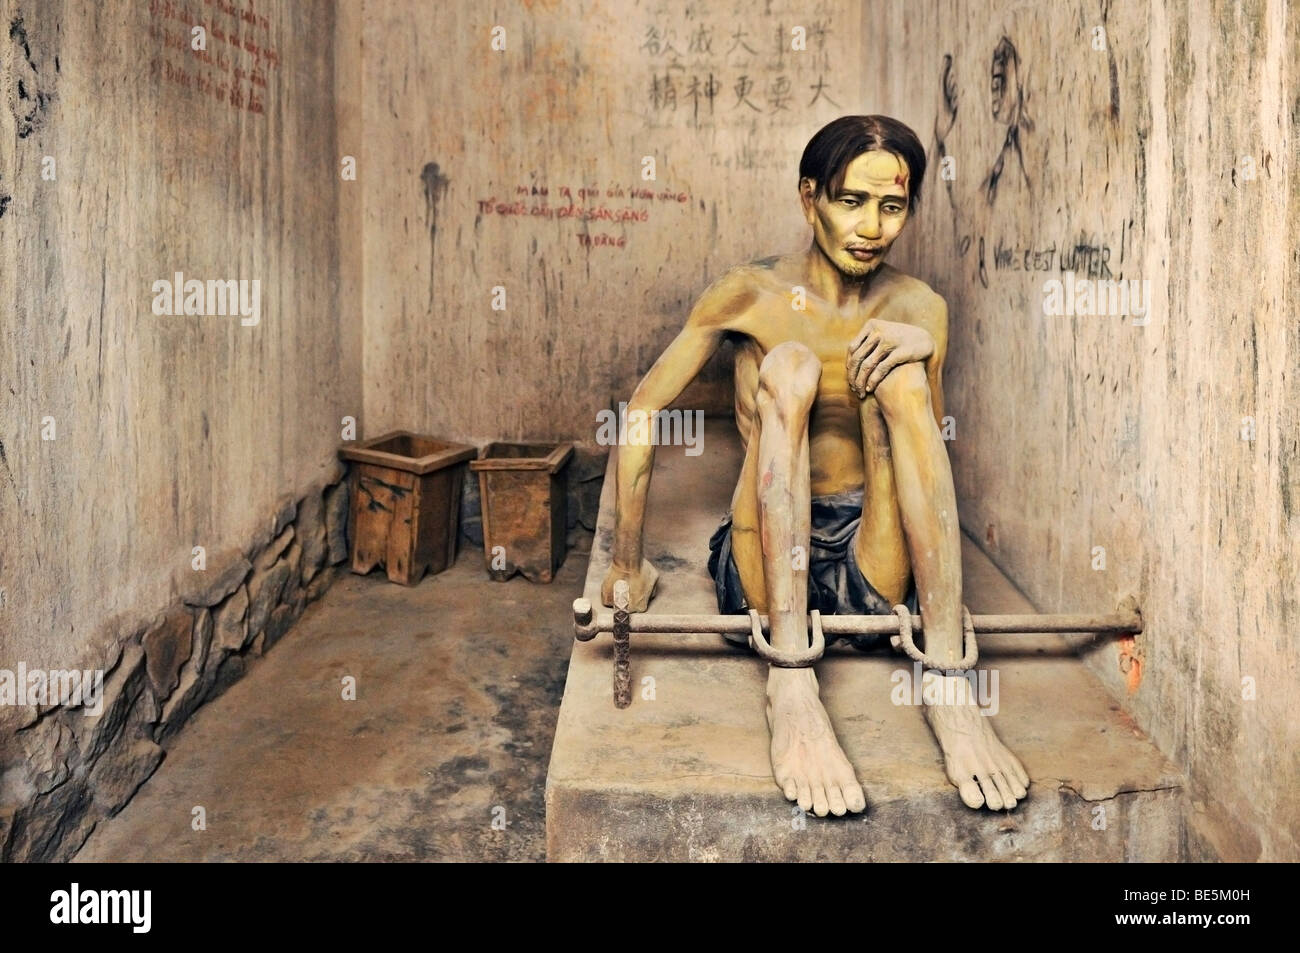 Prisonnier, sculpture, au tiger cage' cellule de prison, musée de la guerre, Ho Chi Minh Ville, Saigon, Vietnam, Asie Banque D'Images